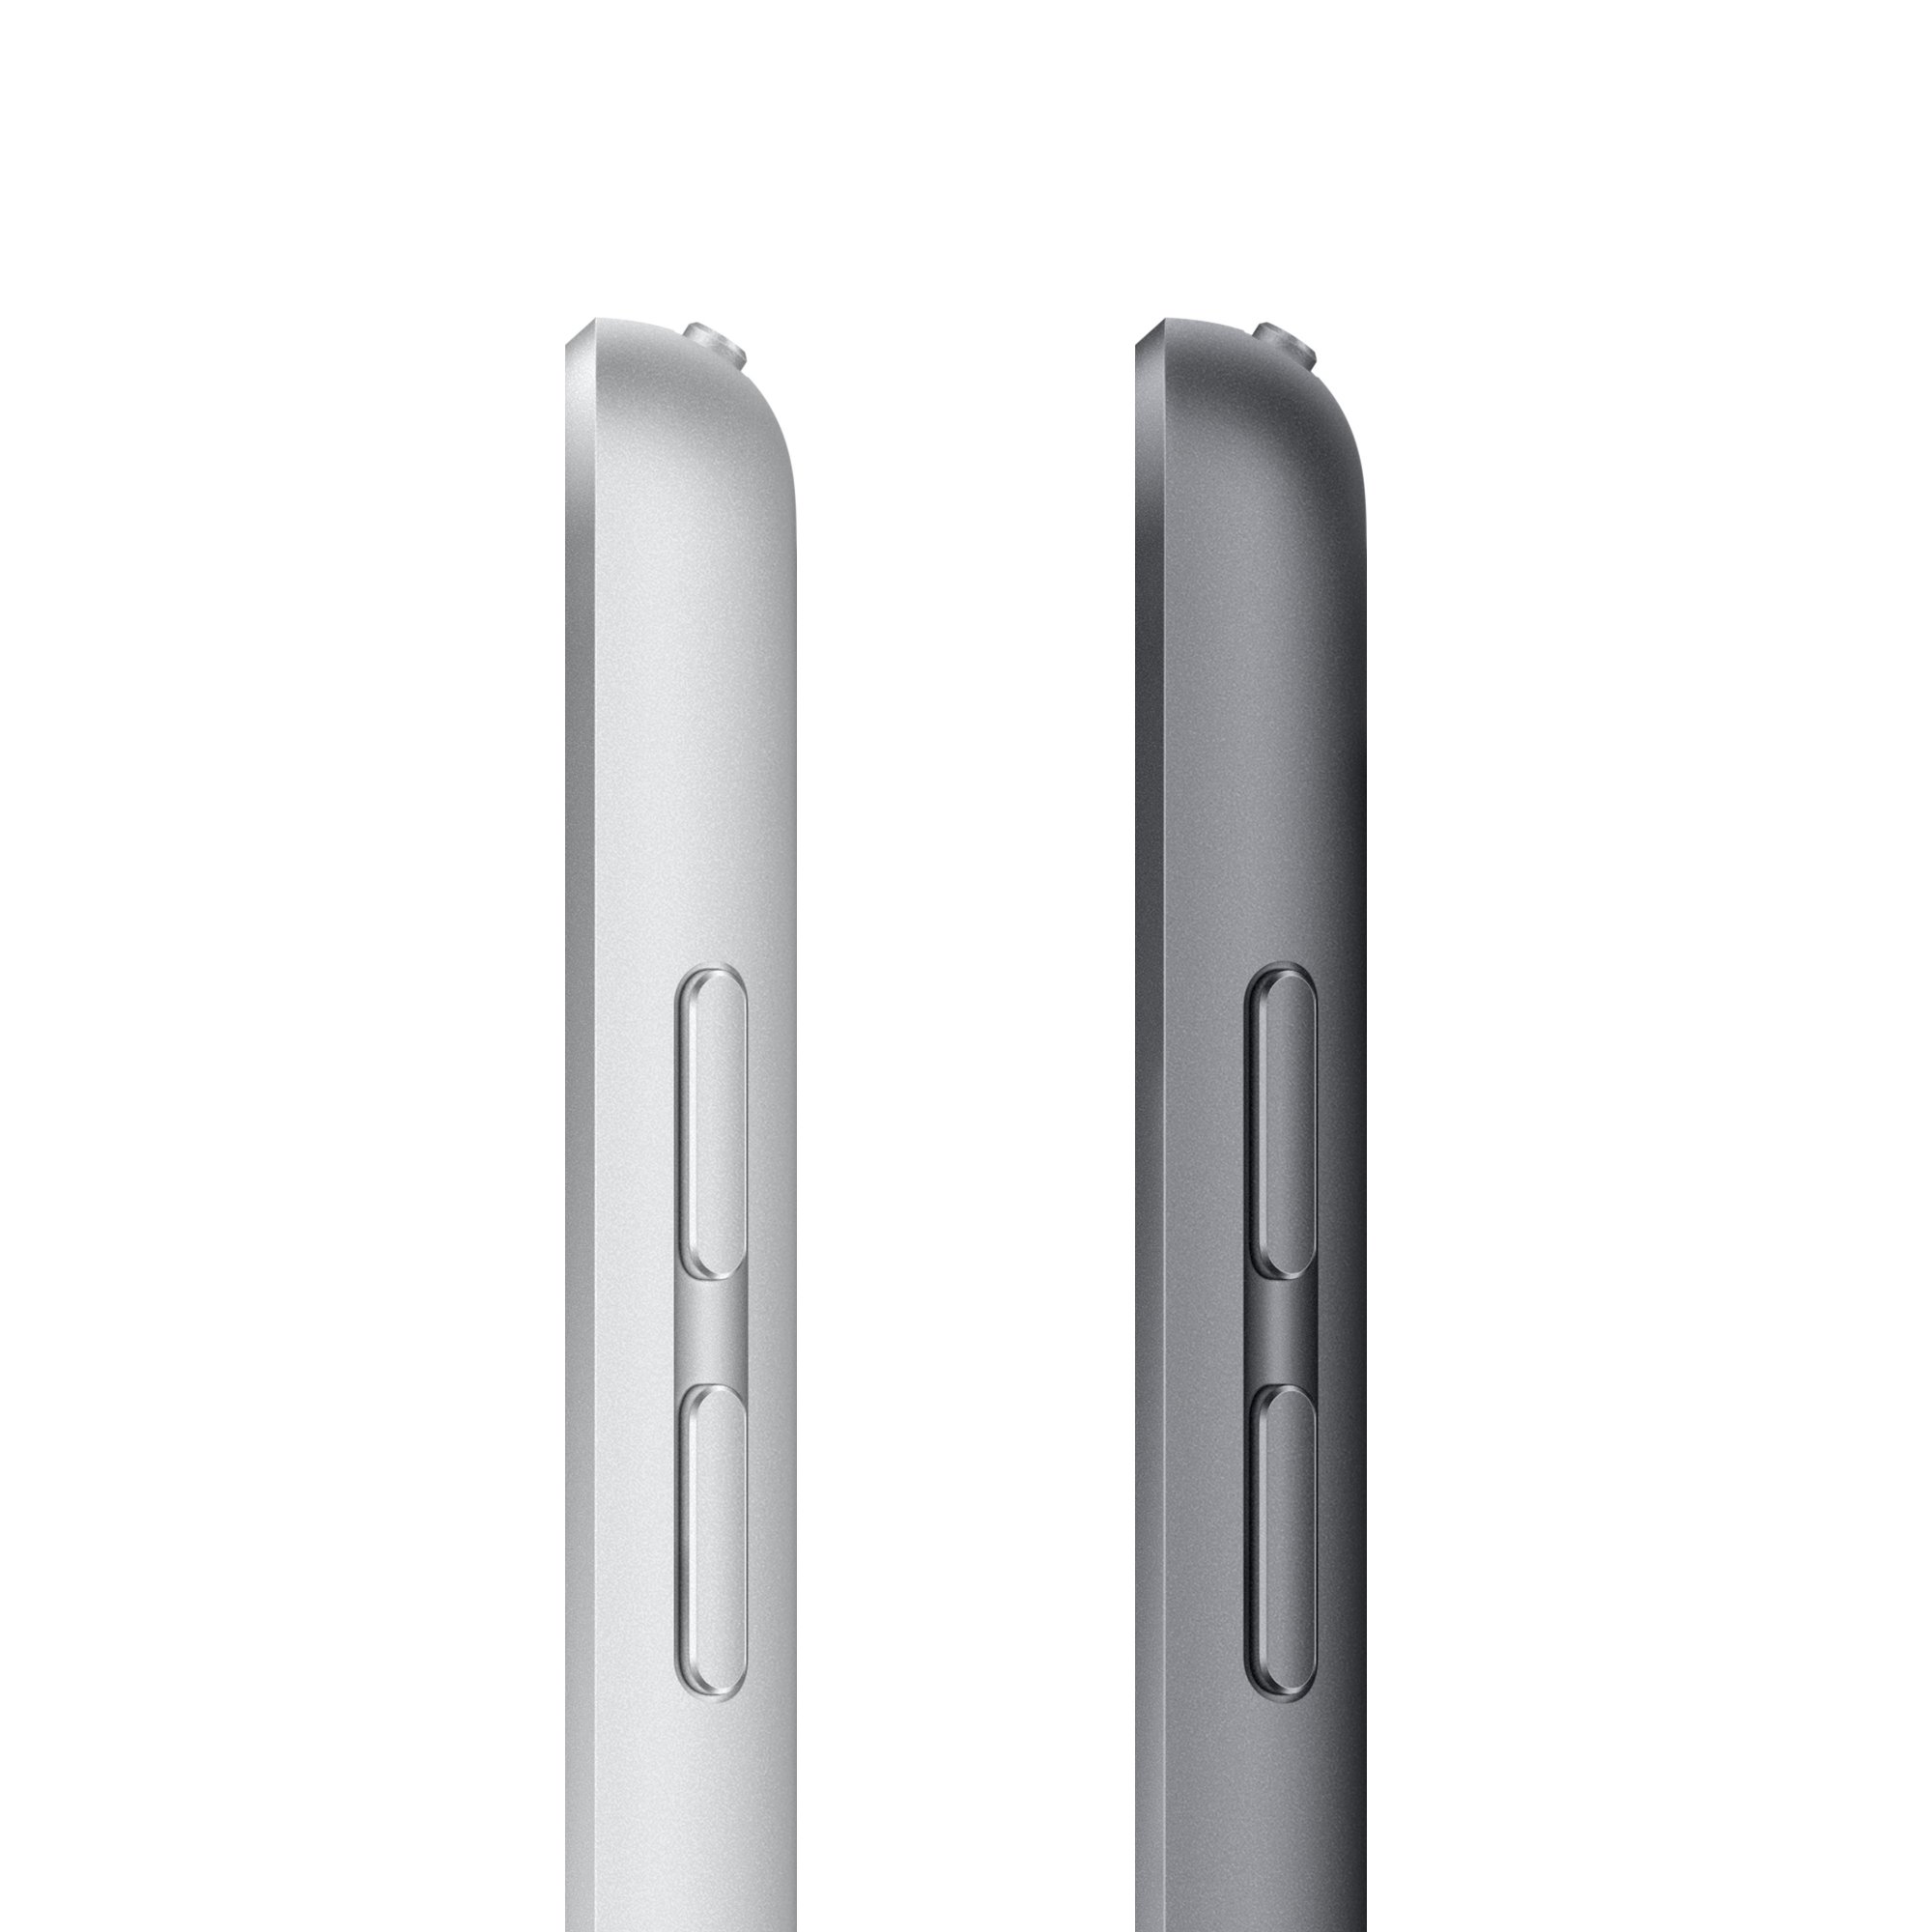 Планшет Apple iPad A2603 10.2  Wi-Fi + LTE 64GB Space Gray (MK663LL\/A) - зображення 5